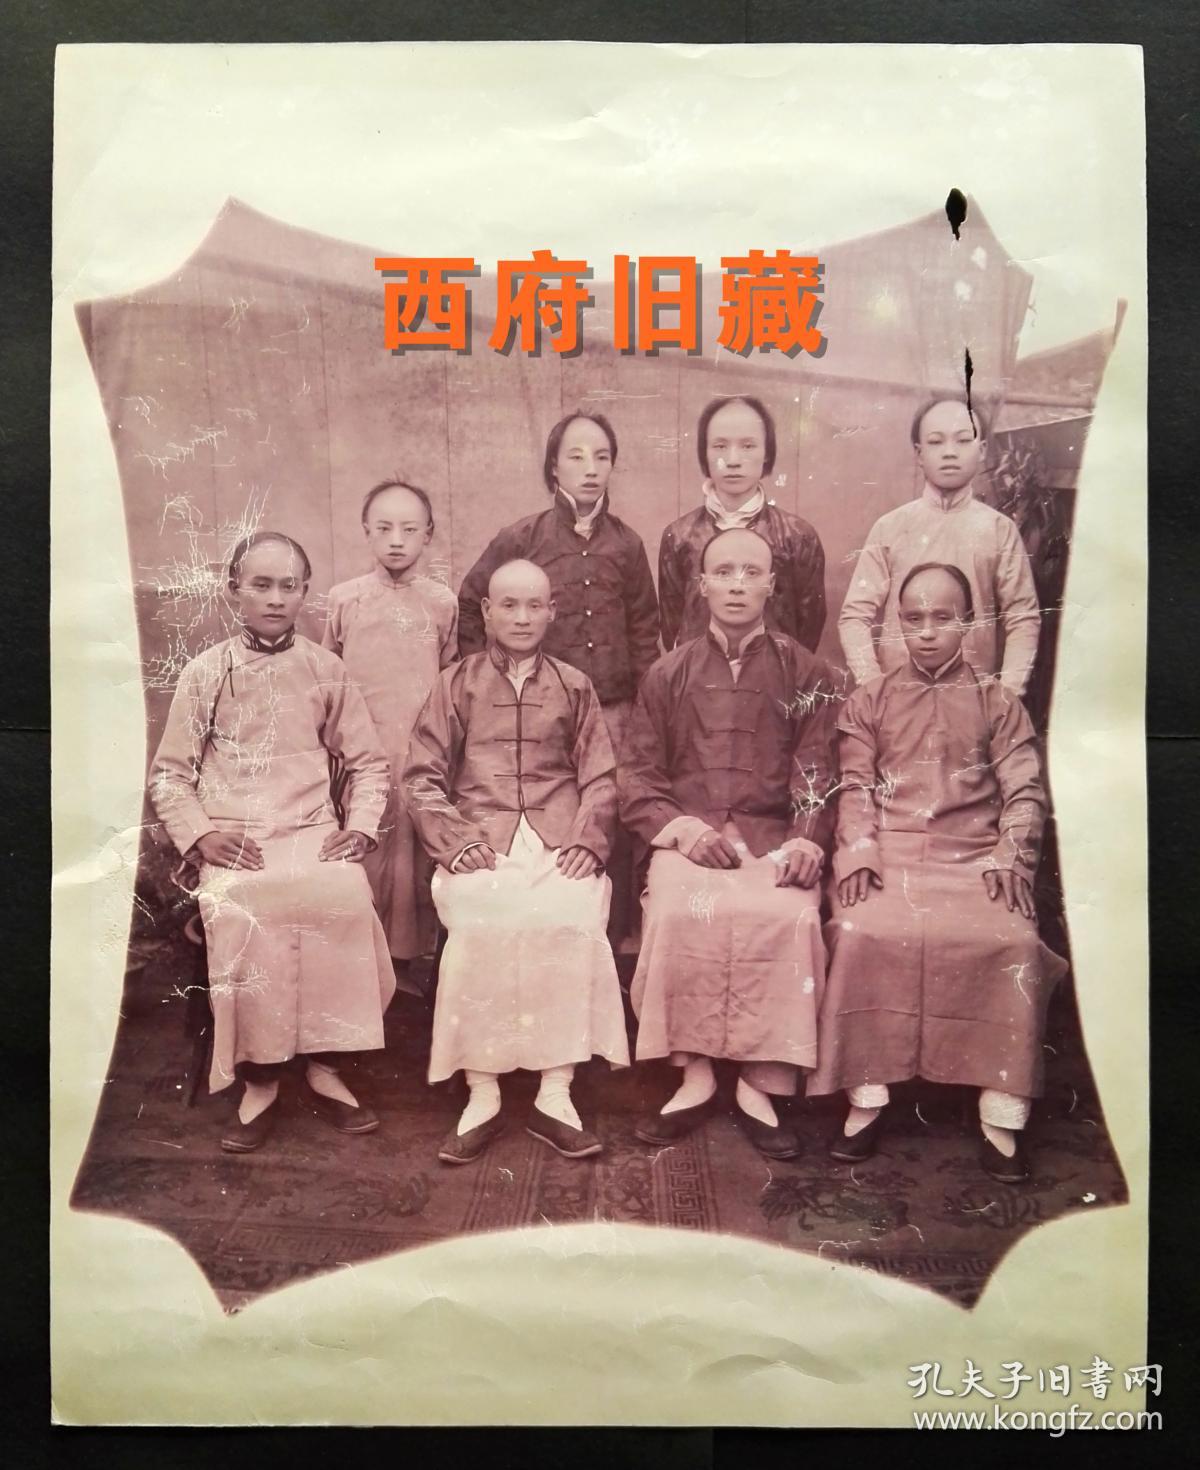 清末时期大尺寸老照片，其中部分人已经剪掉了辫子，一个王朝结束的历史见证，薄相纸。